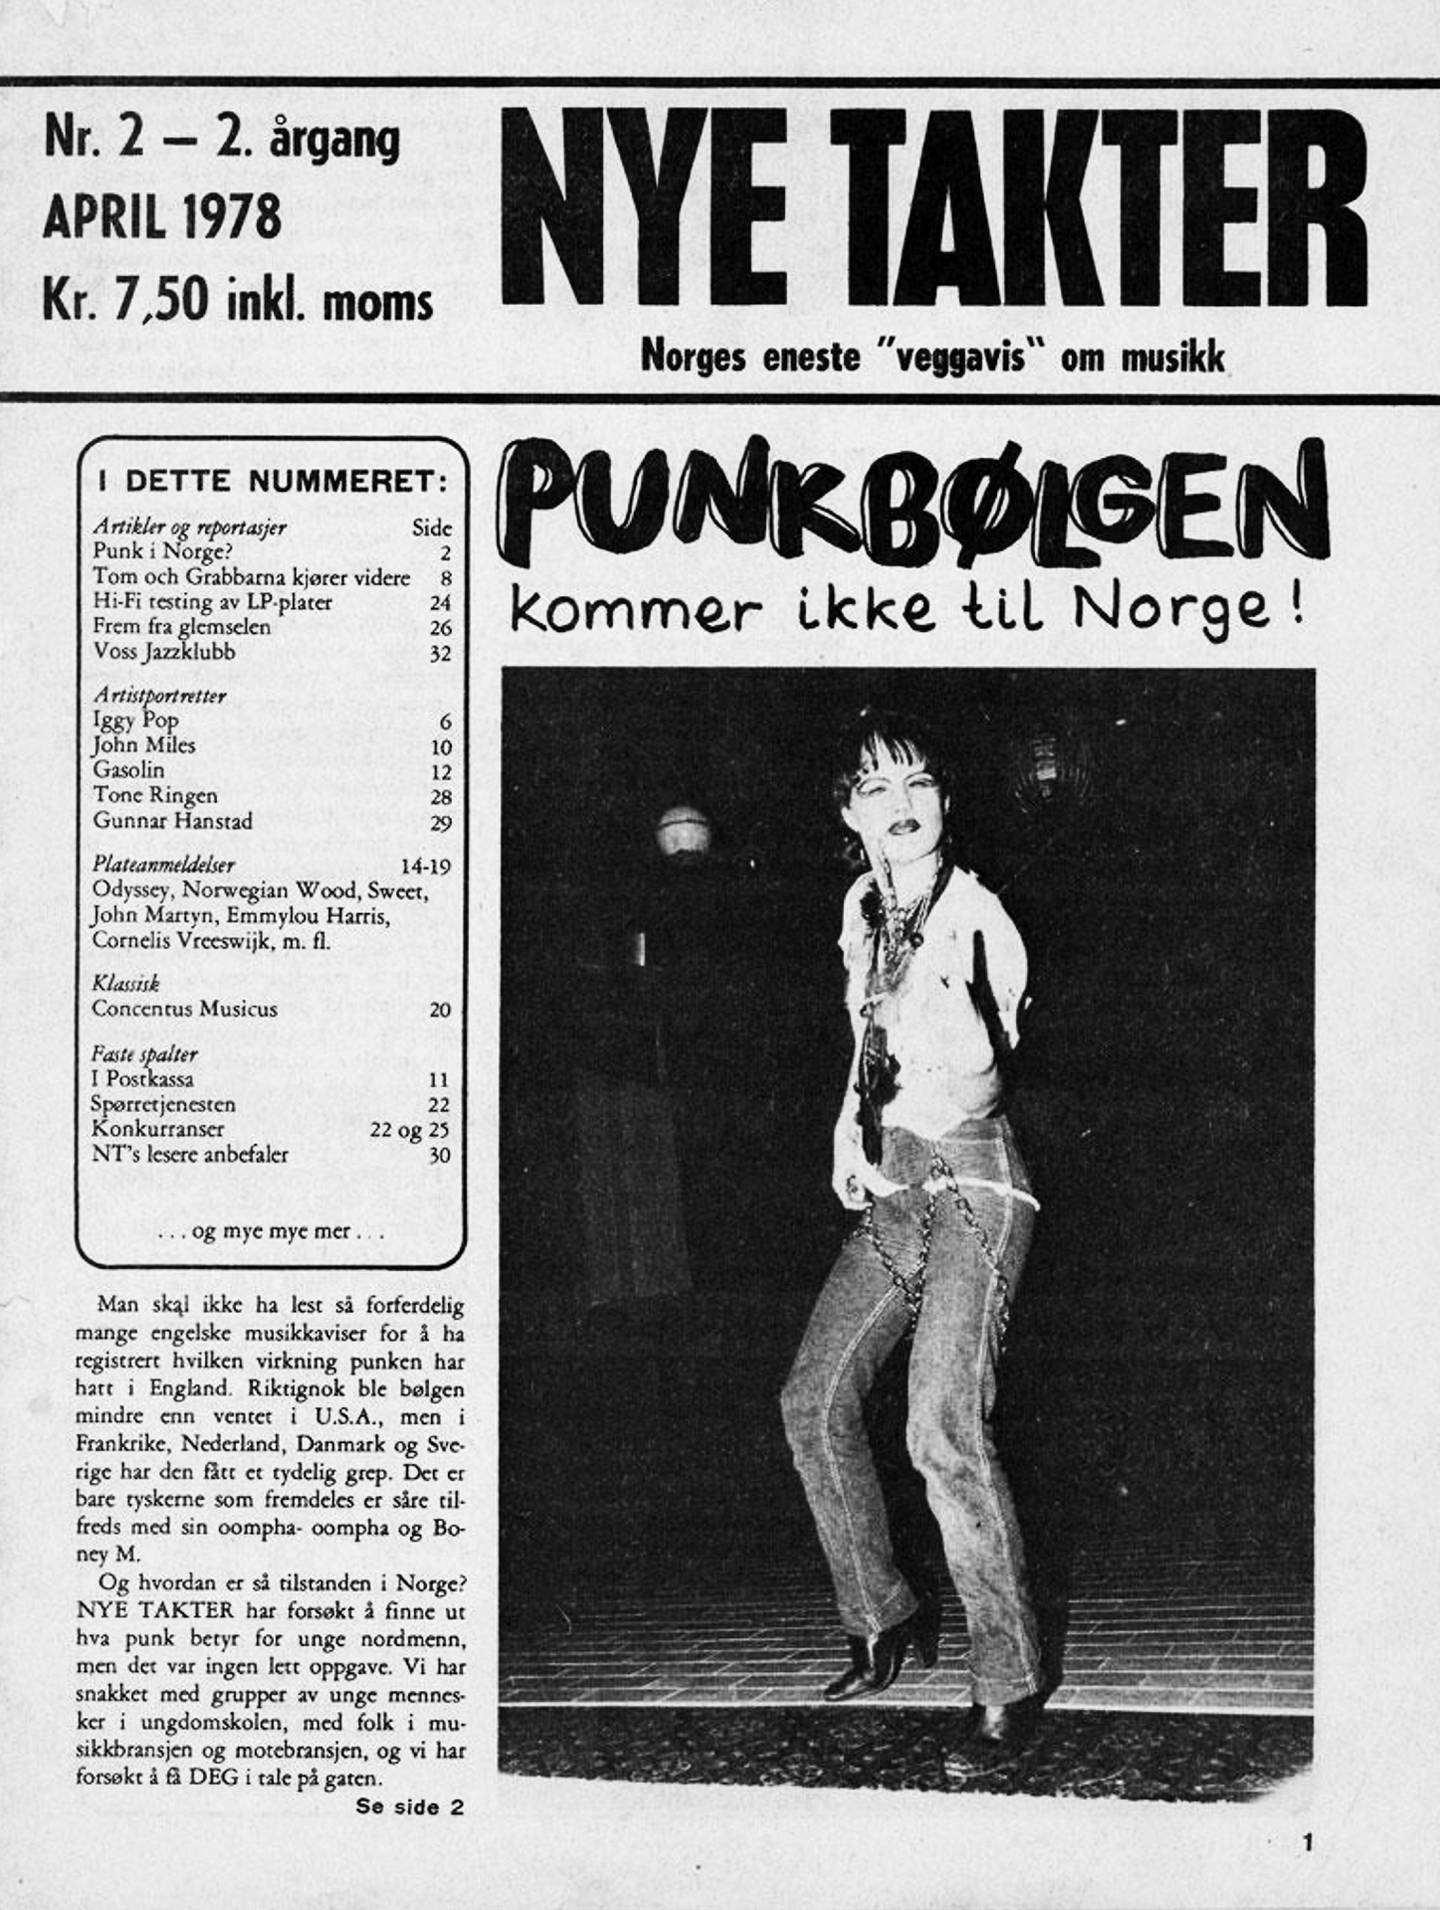 Den beryktede forsida på Nye Takter nr. 2 fra 1978. Bedre enn sitt rykte, mener vi selv. FOTO: ROCKHEIM